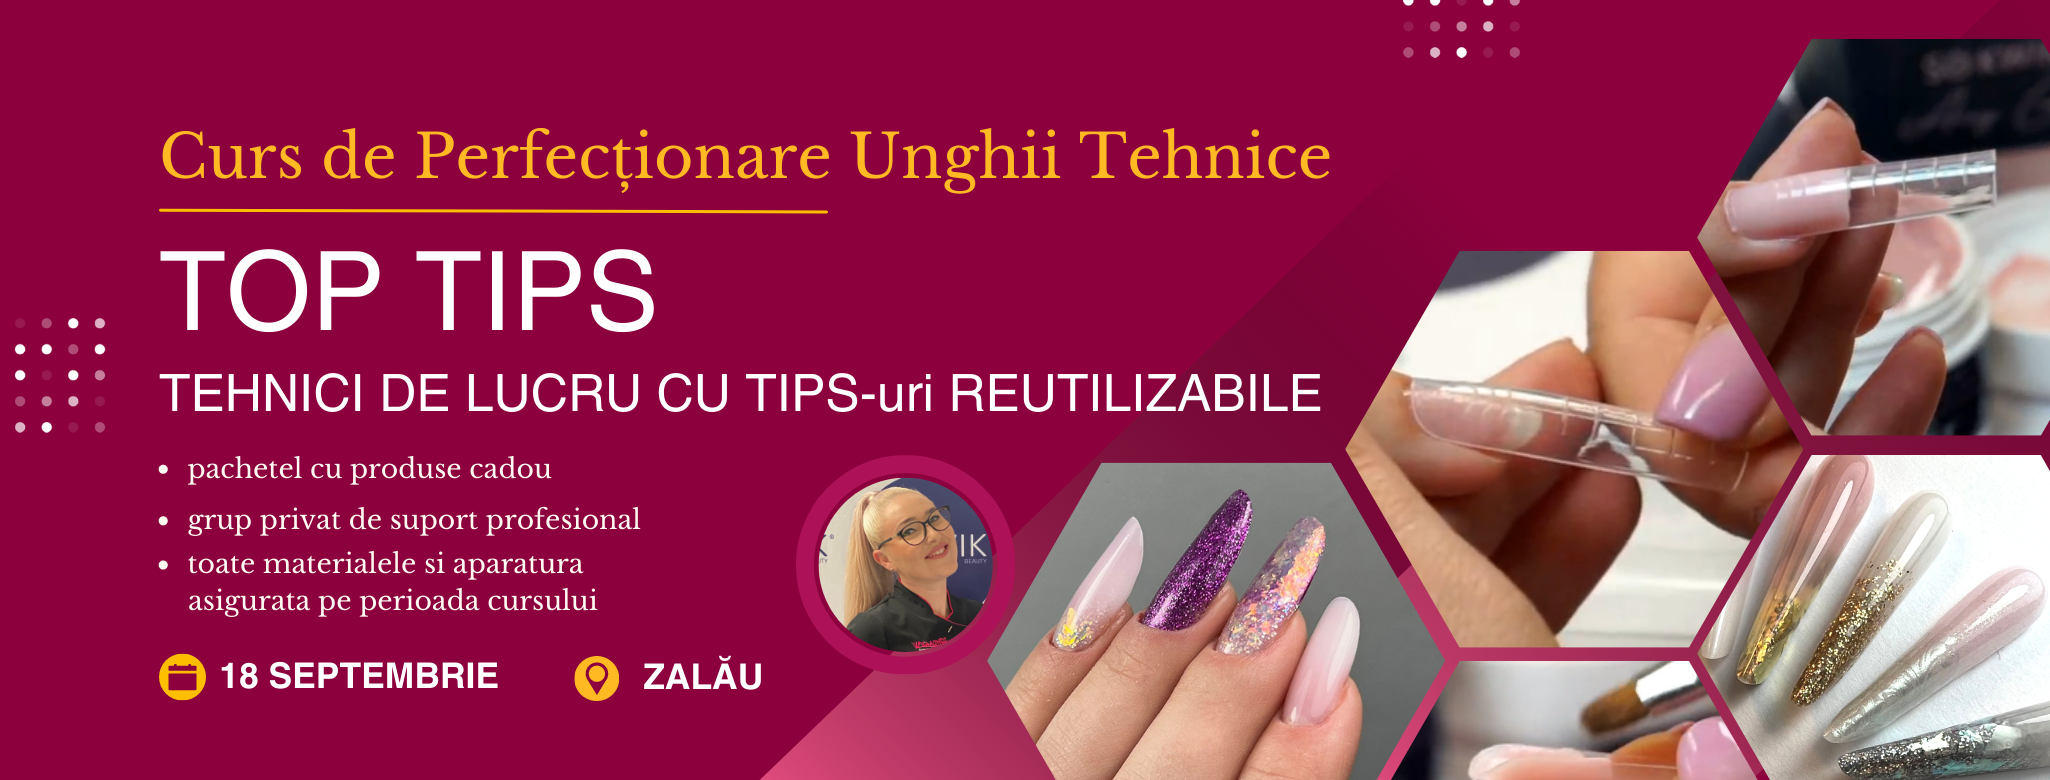 Curs Unghii - Top Tips - Tehnici de Top cu Tips-uri Reutilizabile (Zalau)